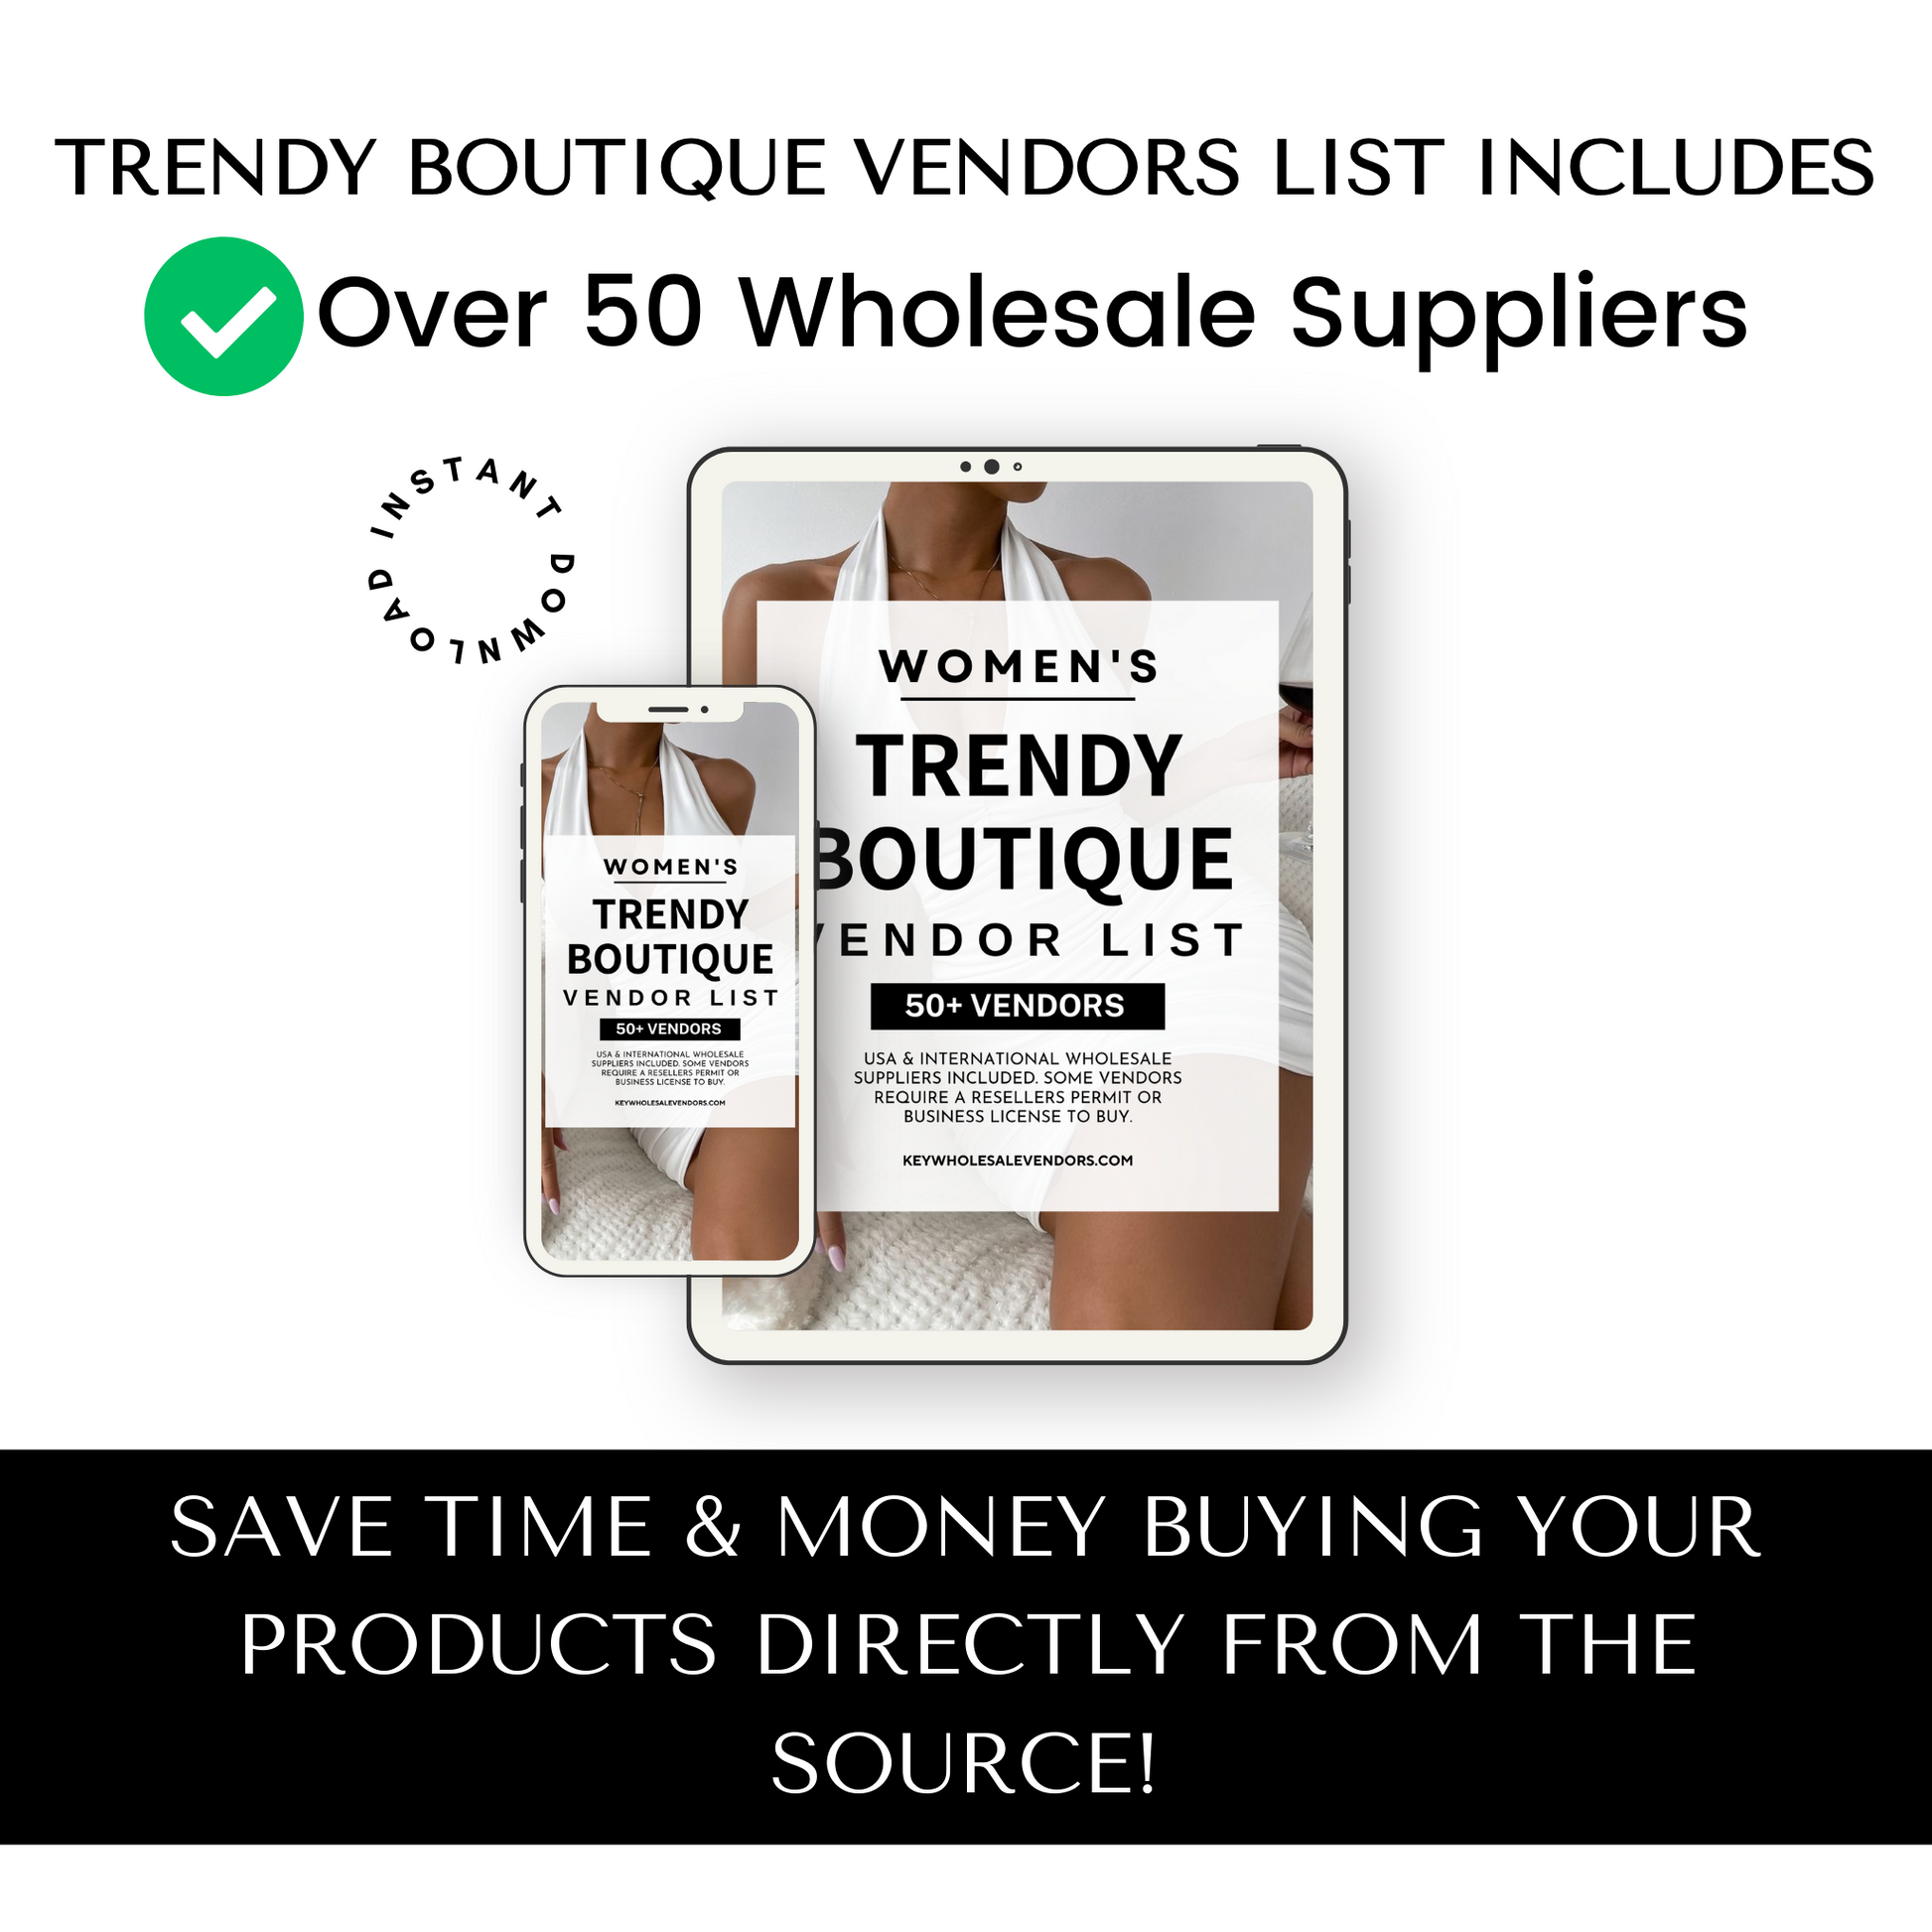 Wholesale Vendor List To Start Your Boutique!